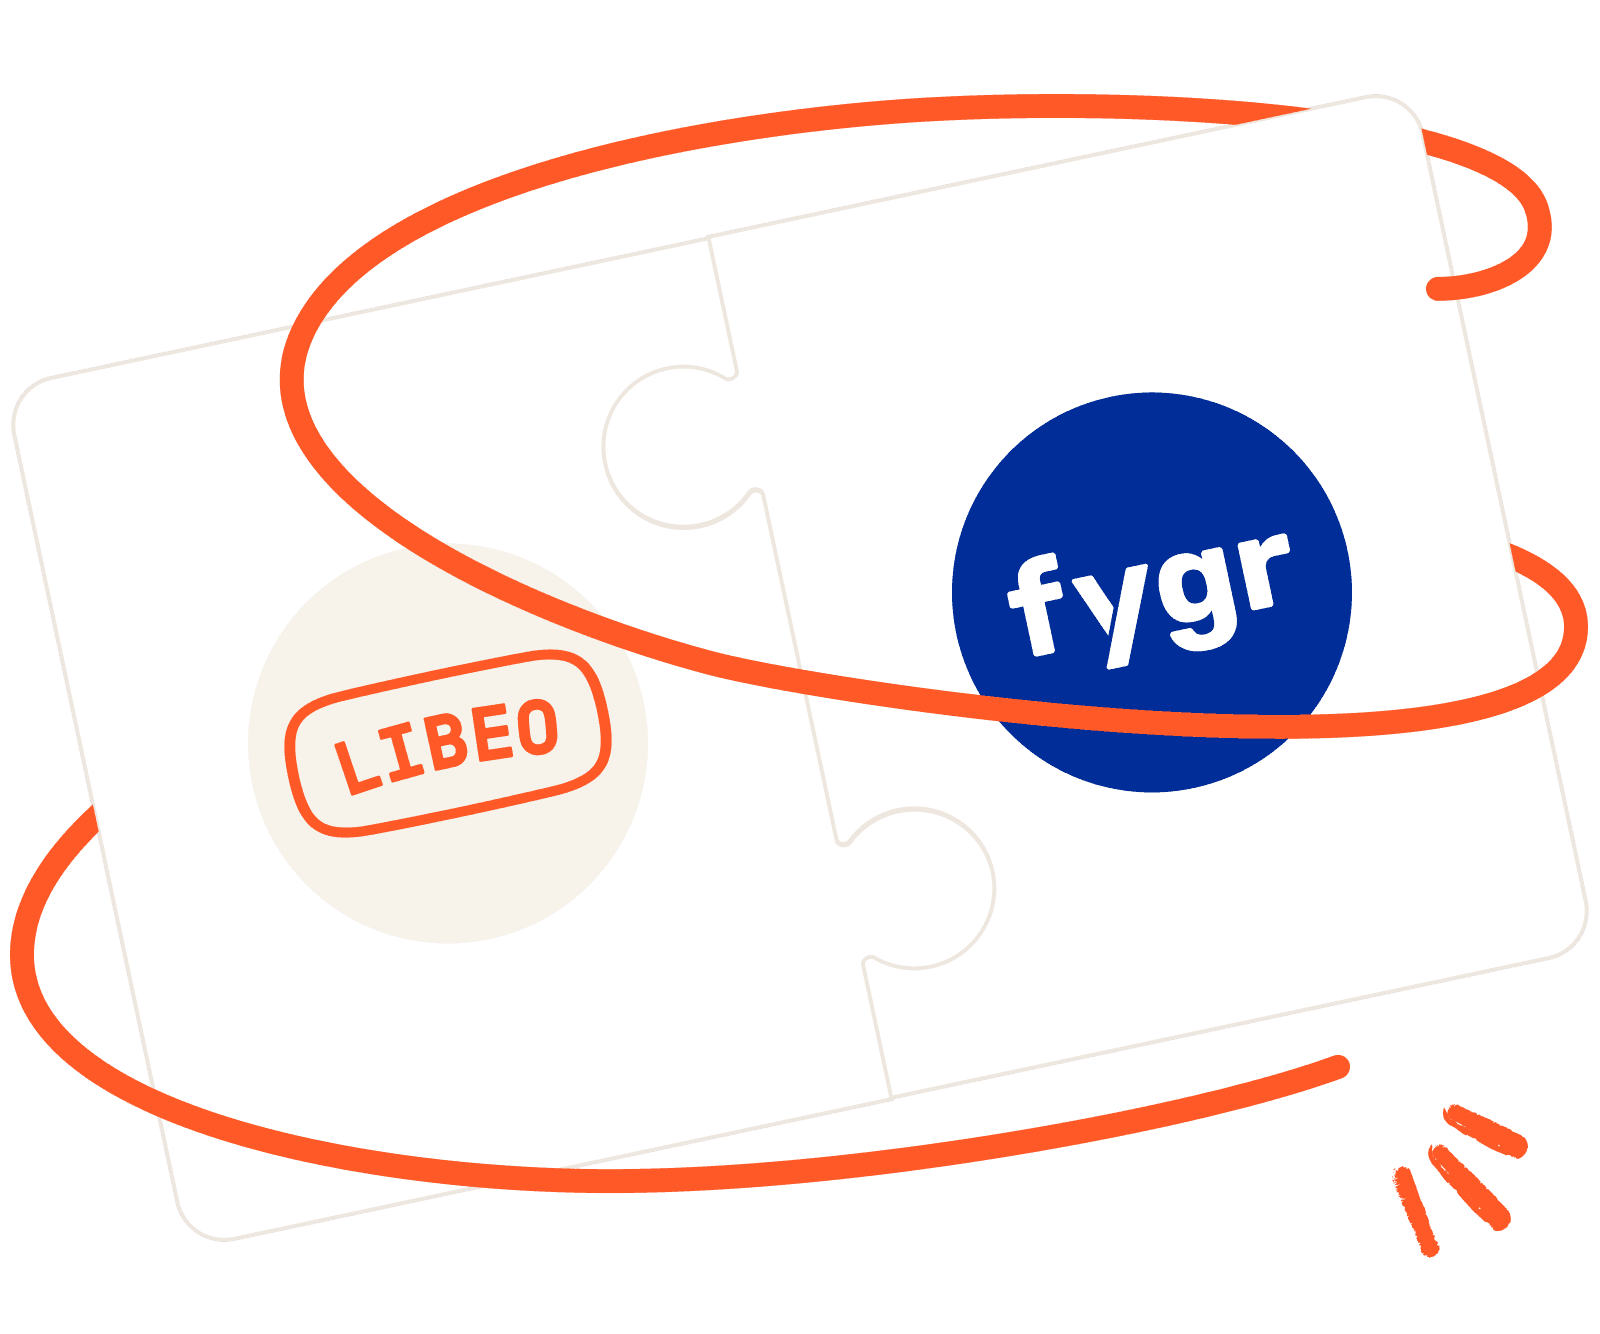 Libeo x Fygr logo